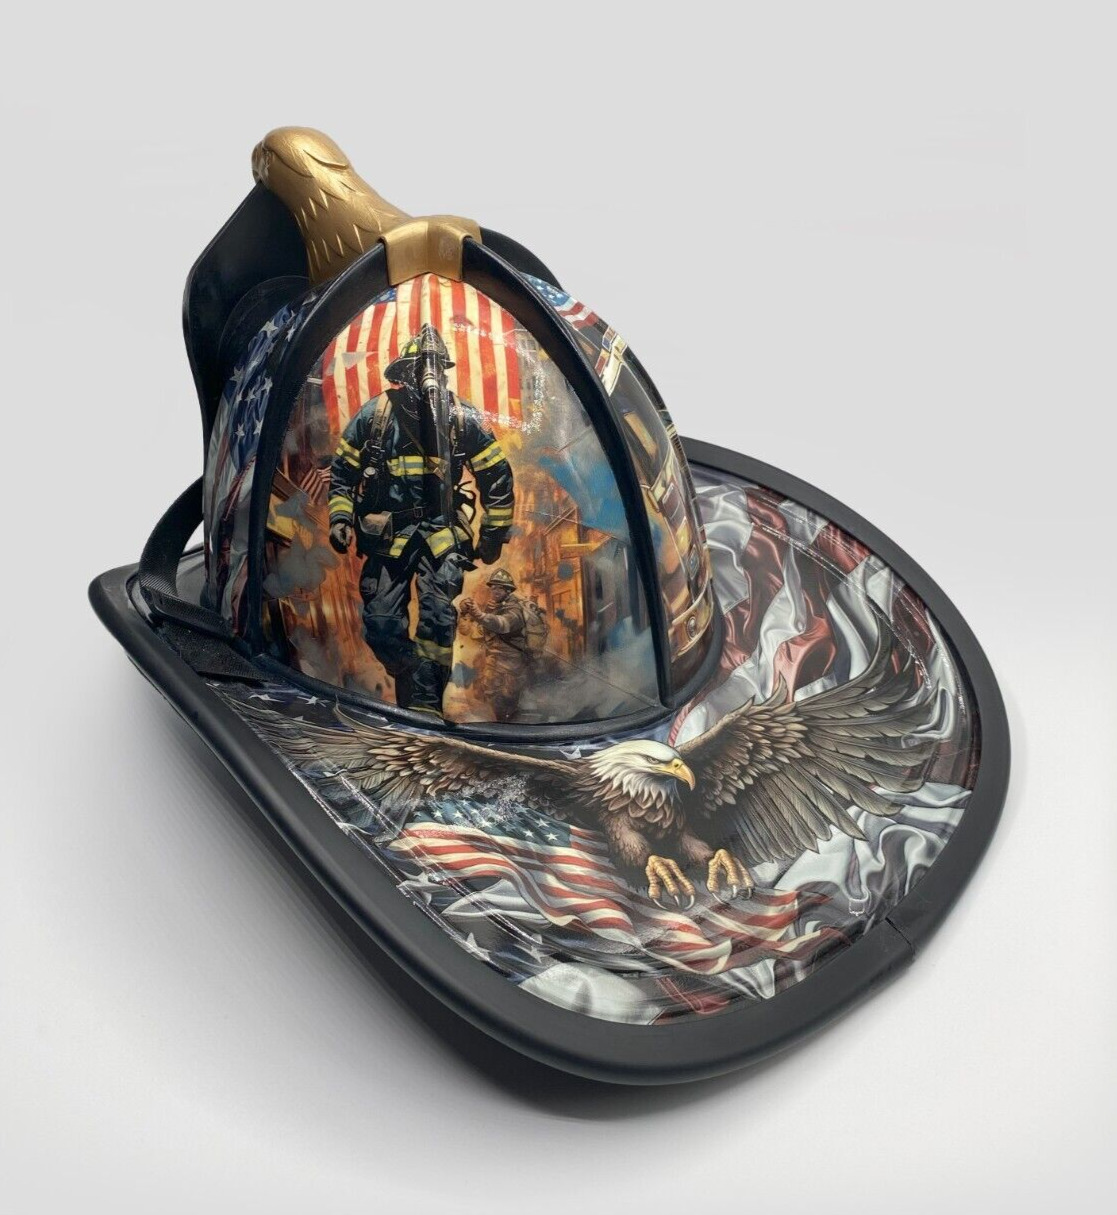 Custom Designed Firefighter Helmet- Vinyl Wrap- Fireman Tribute